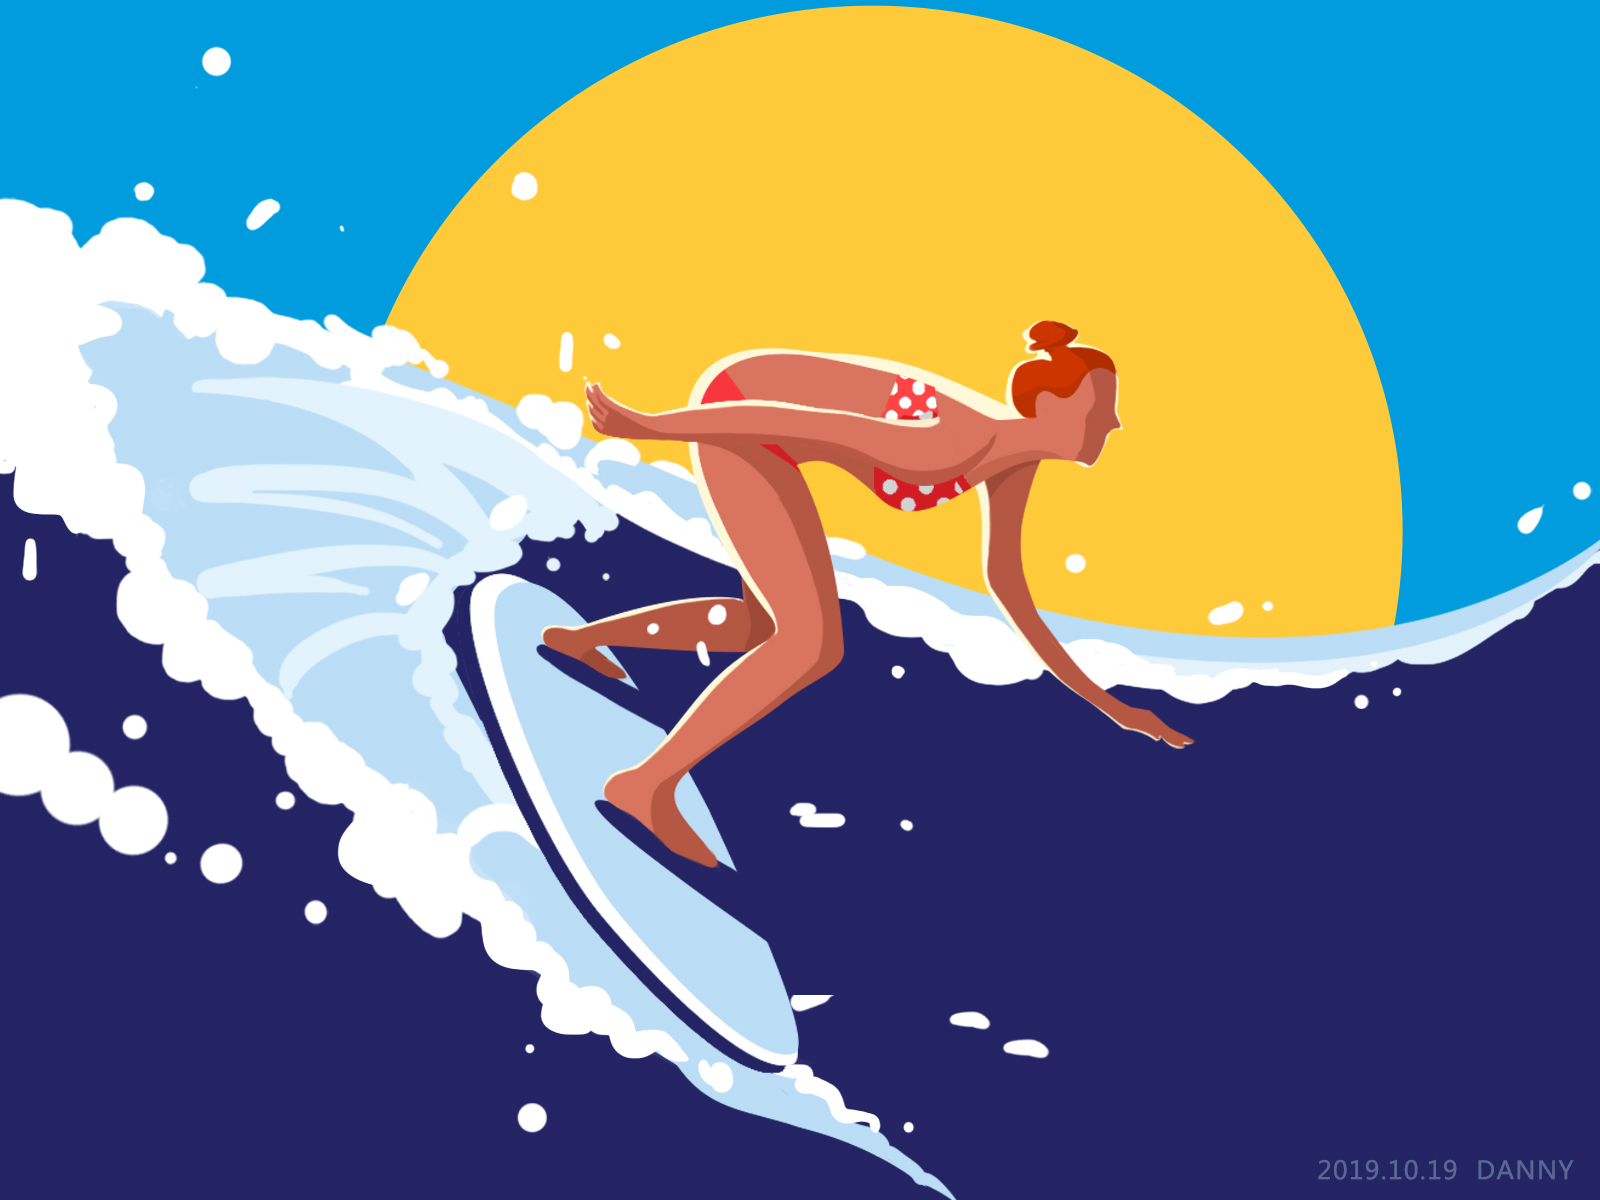 surfer by DannyXu on Dribbble